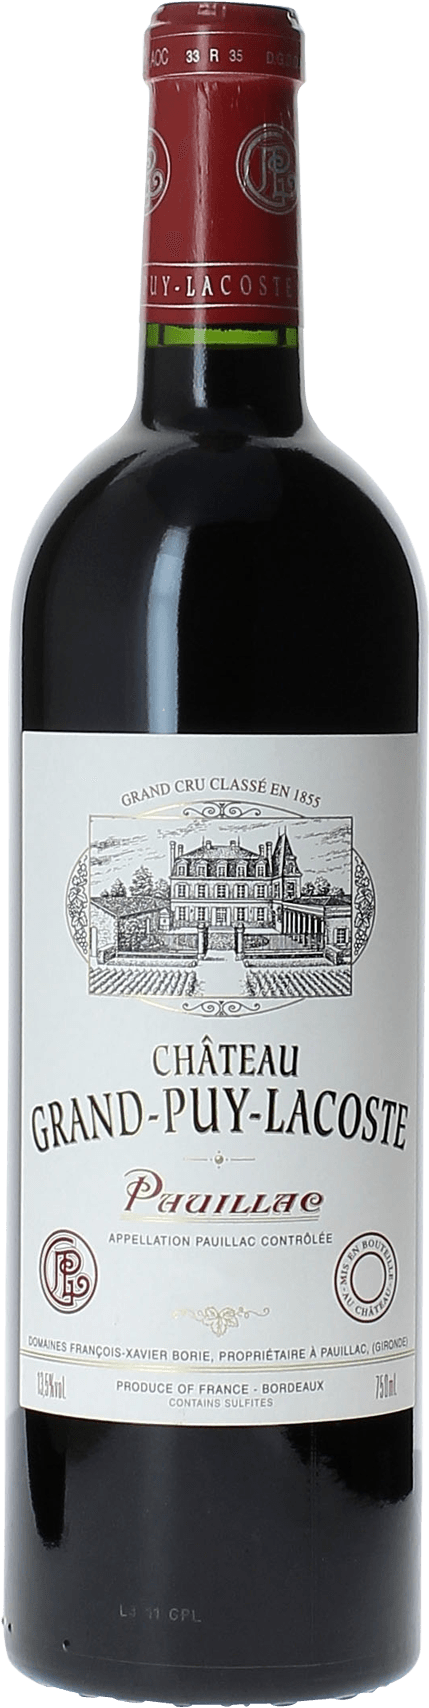 Grand puy lacoste 2016 5 me Grand cru class Pauillac, Bordeaux rouge